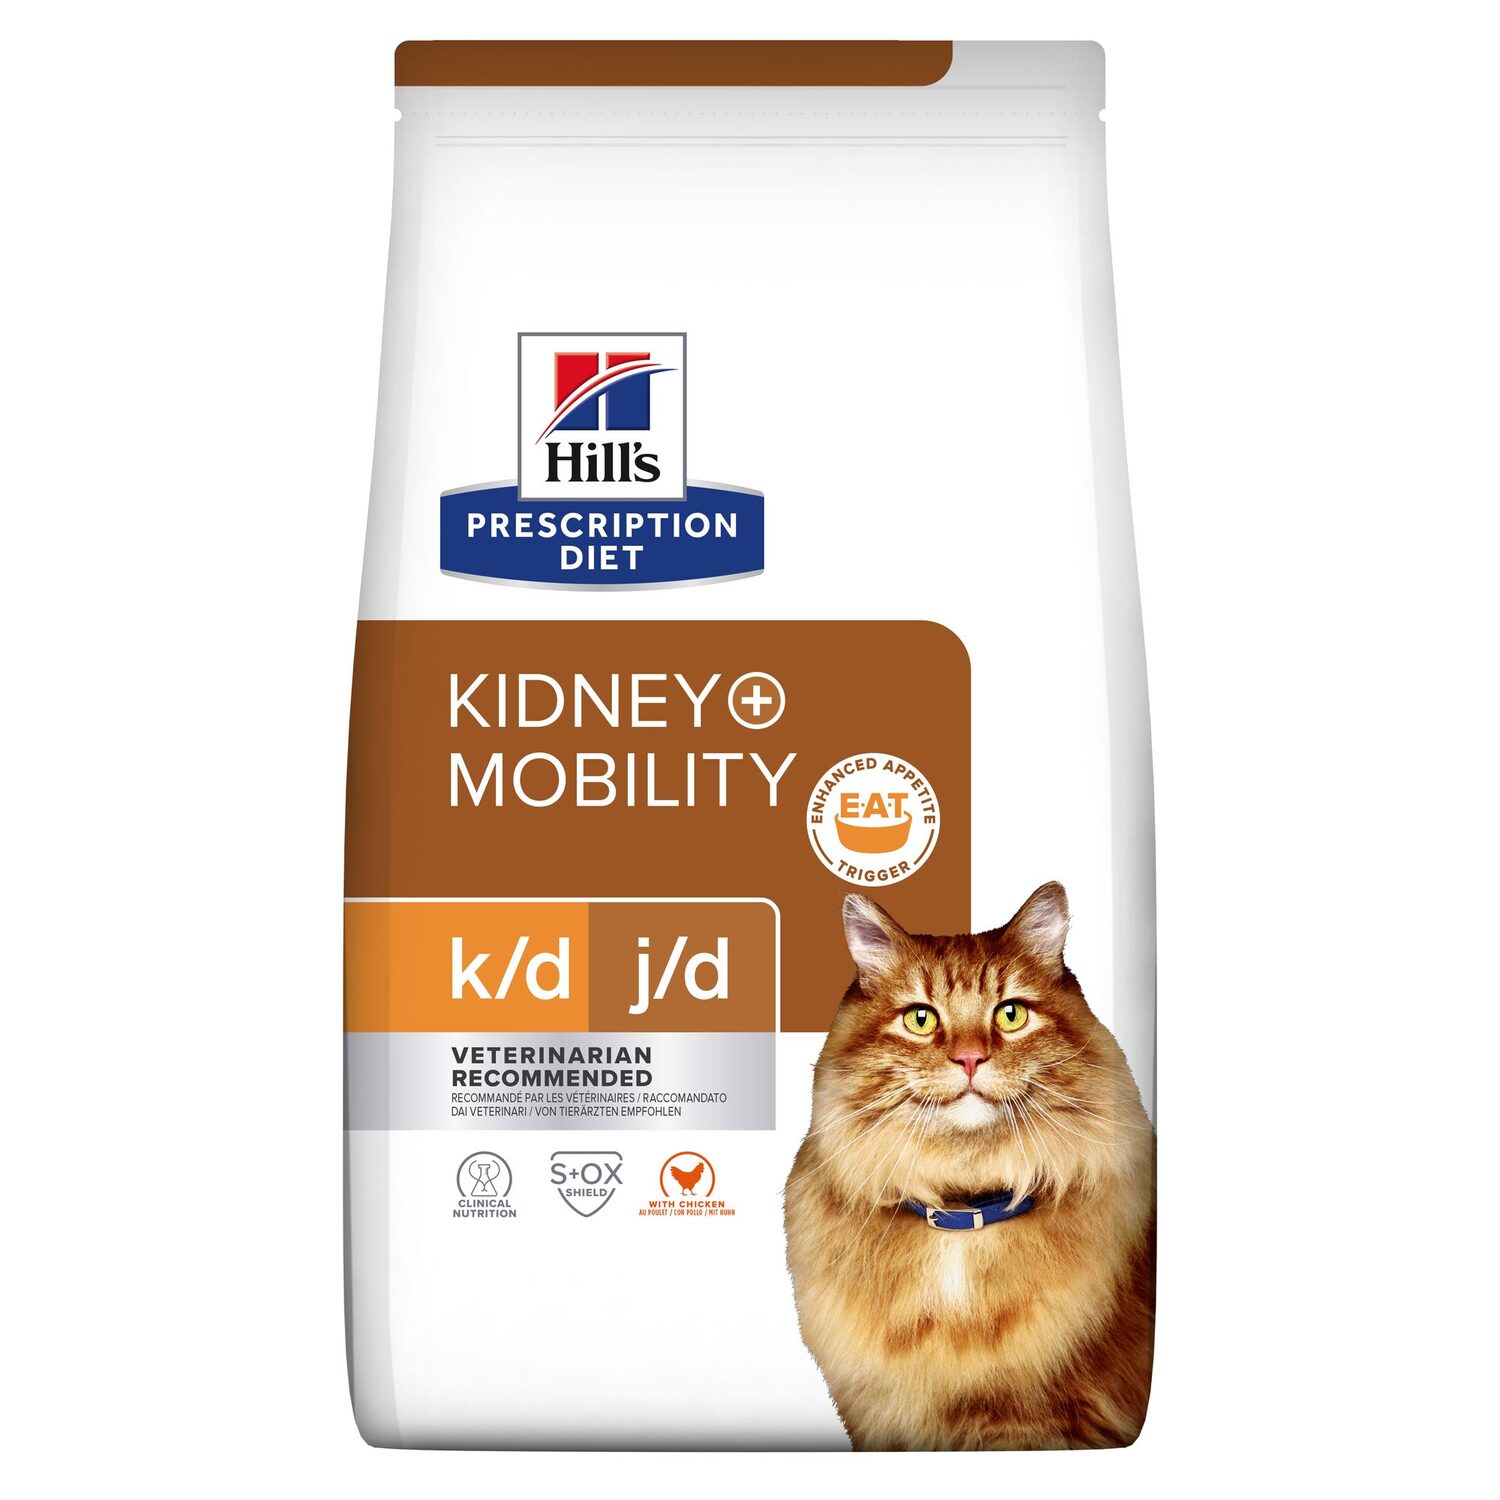 Hill's Prescription Diet k/d + Mobility - Feline - 3 kg von Hills